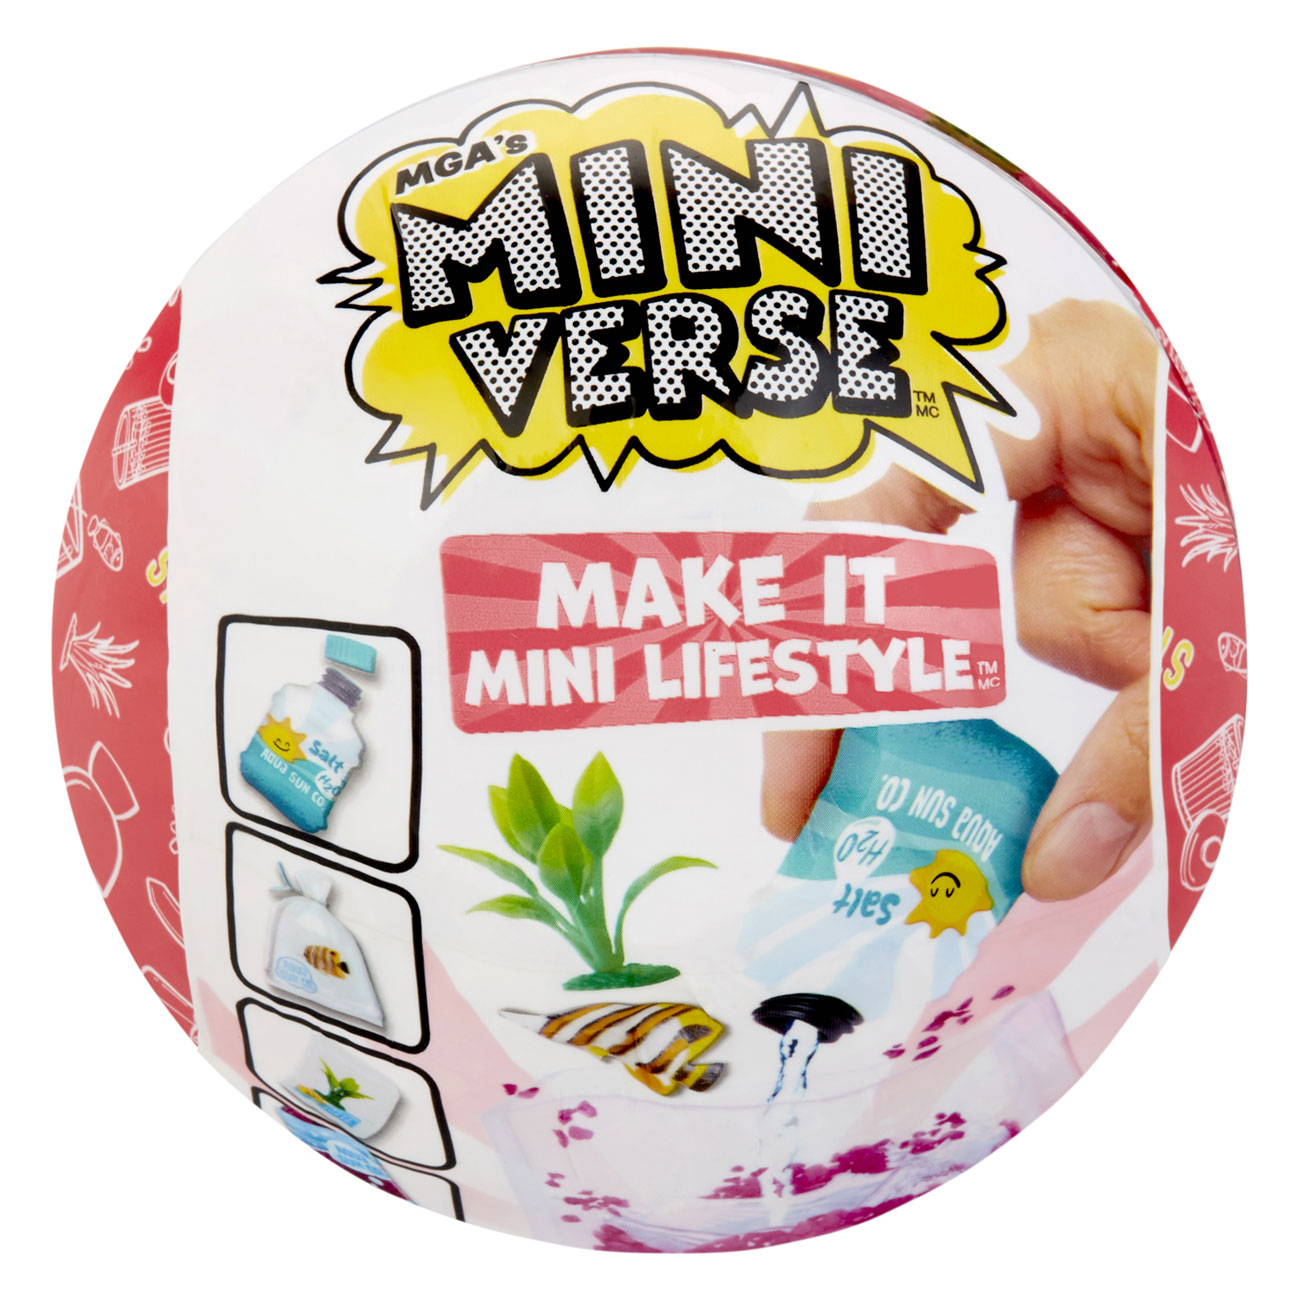 MGA's Miniverse – Make It Mini Lifestyle Serie 1 zum Sammeln